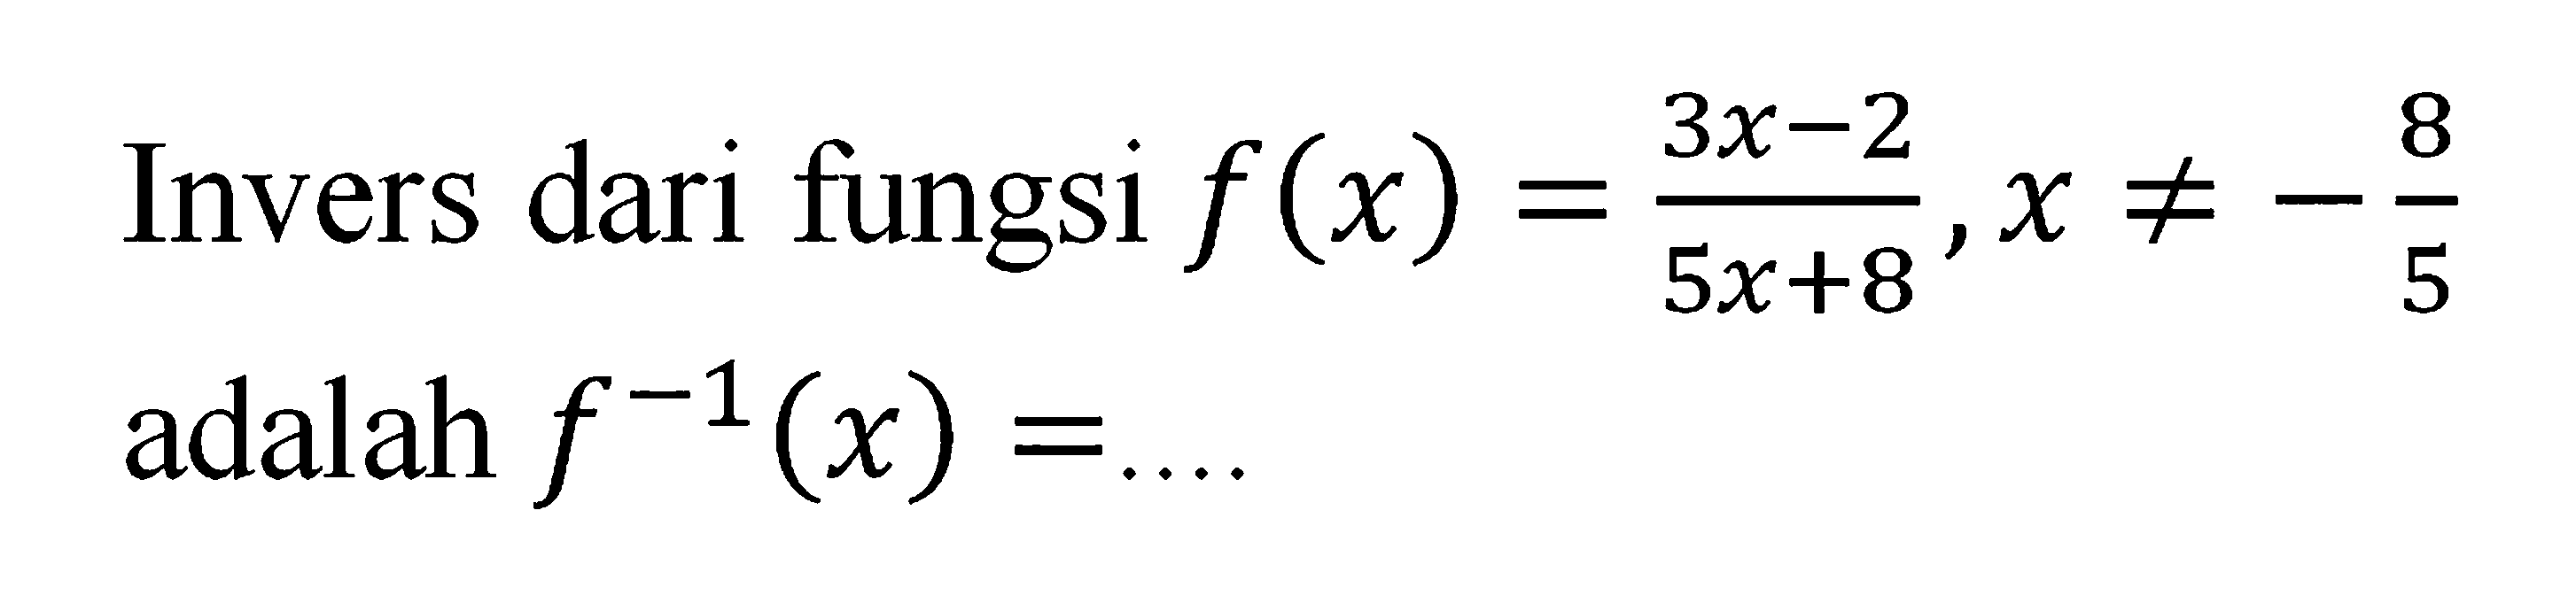 Invers dari fungsi f(x)=(3x-2)/(5x+8), x=/=-8/5 adalah f^(-1)(x)=... 